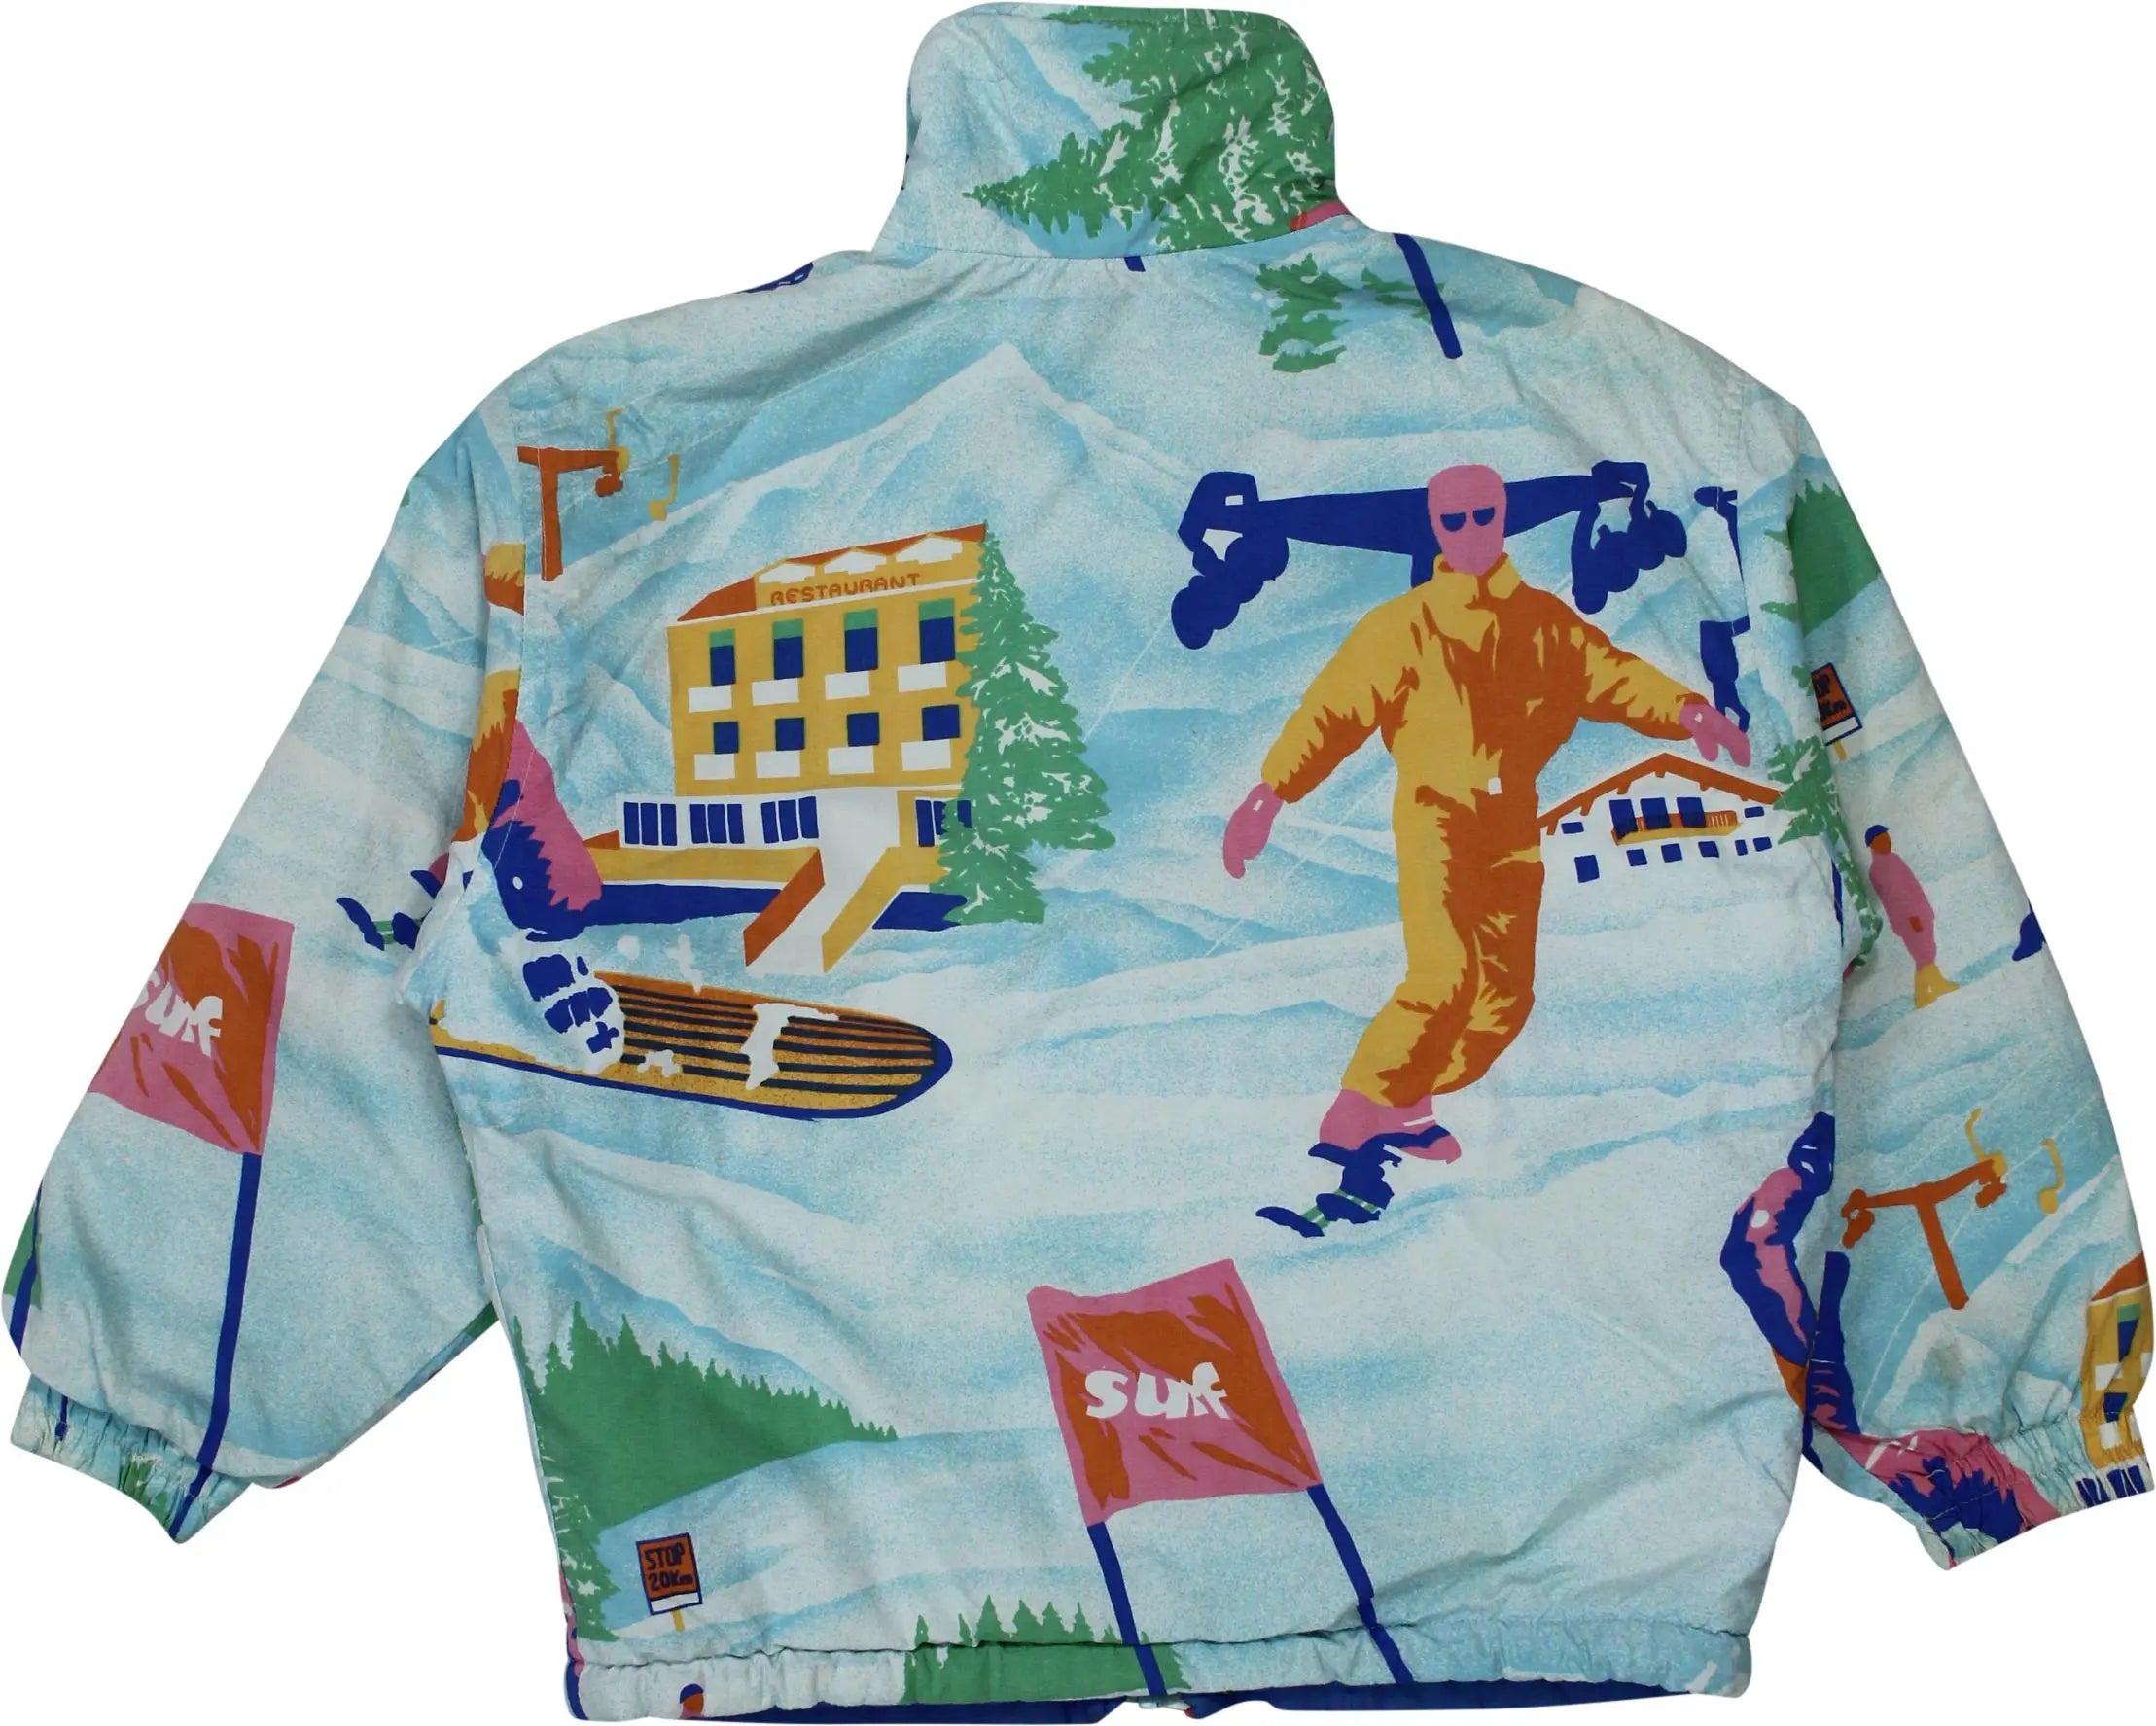 Colmar - Blue Ski Jacket- ThriftTale.com - Vintage and second handclothing